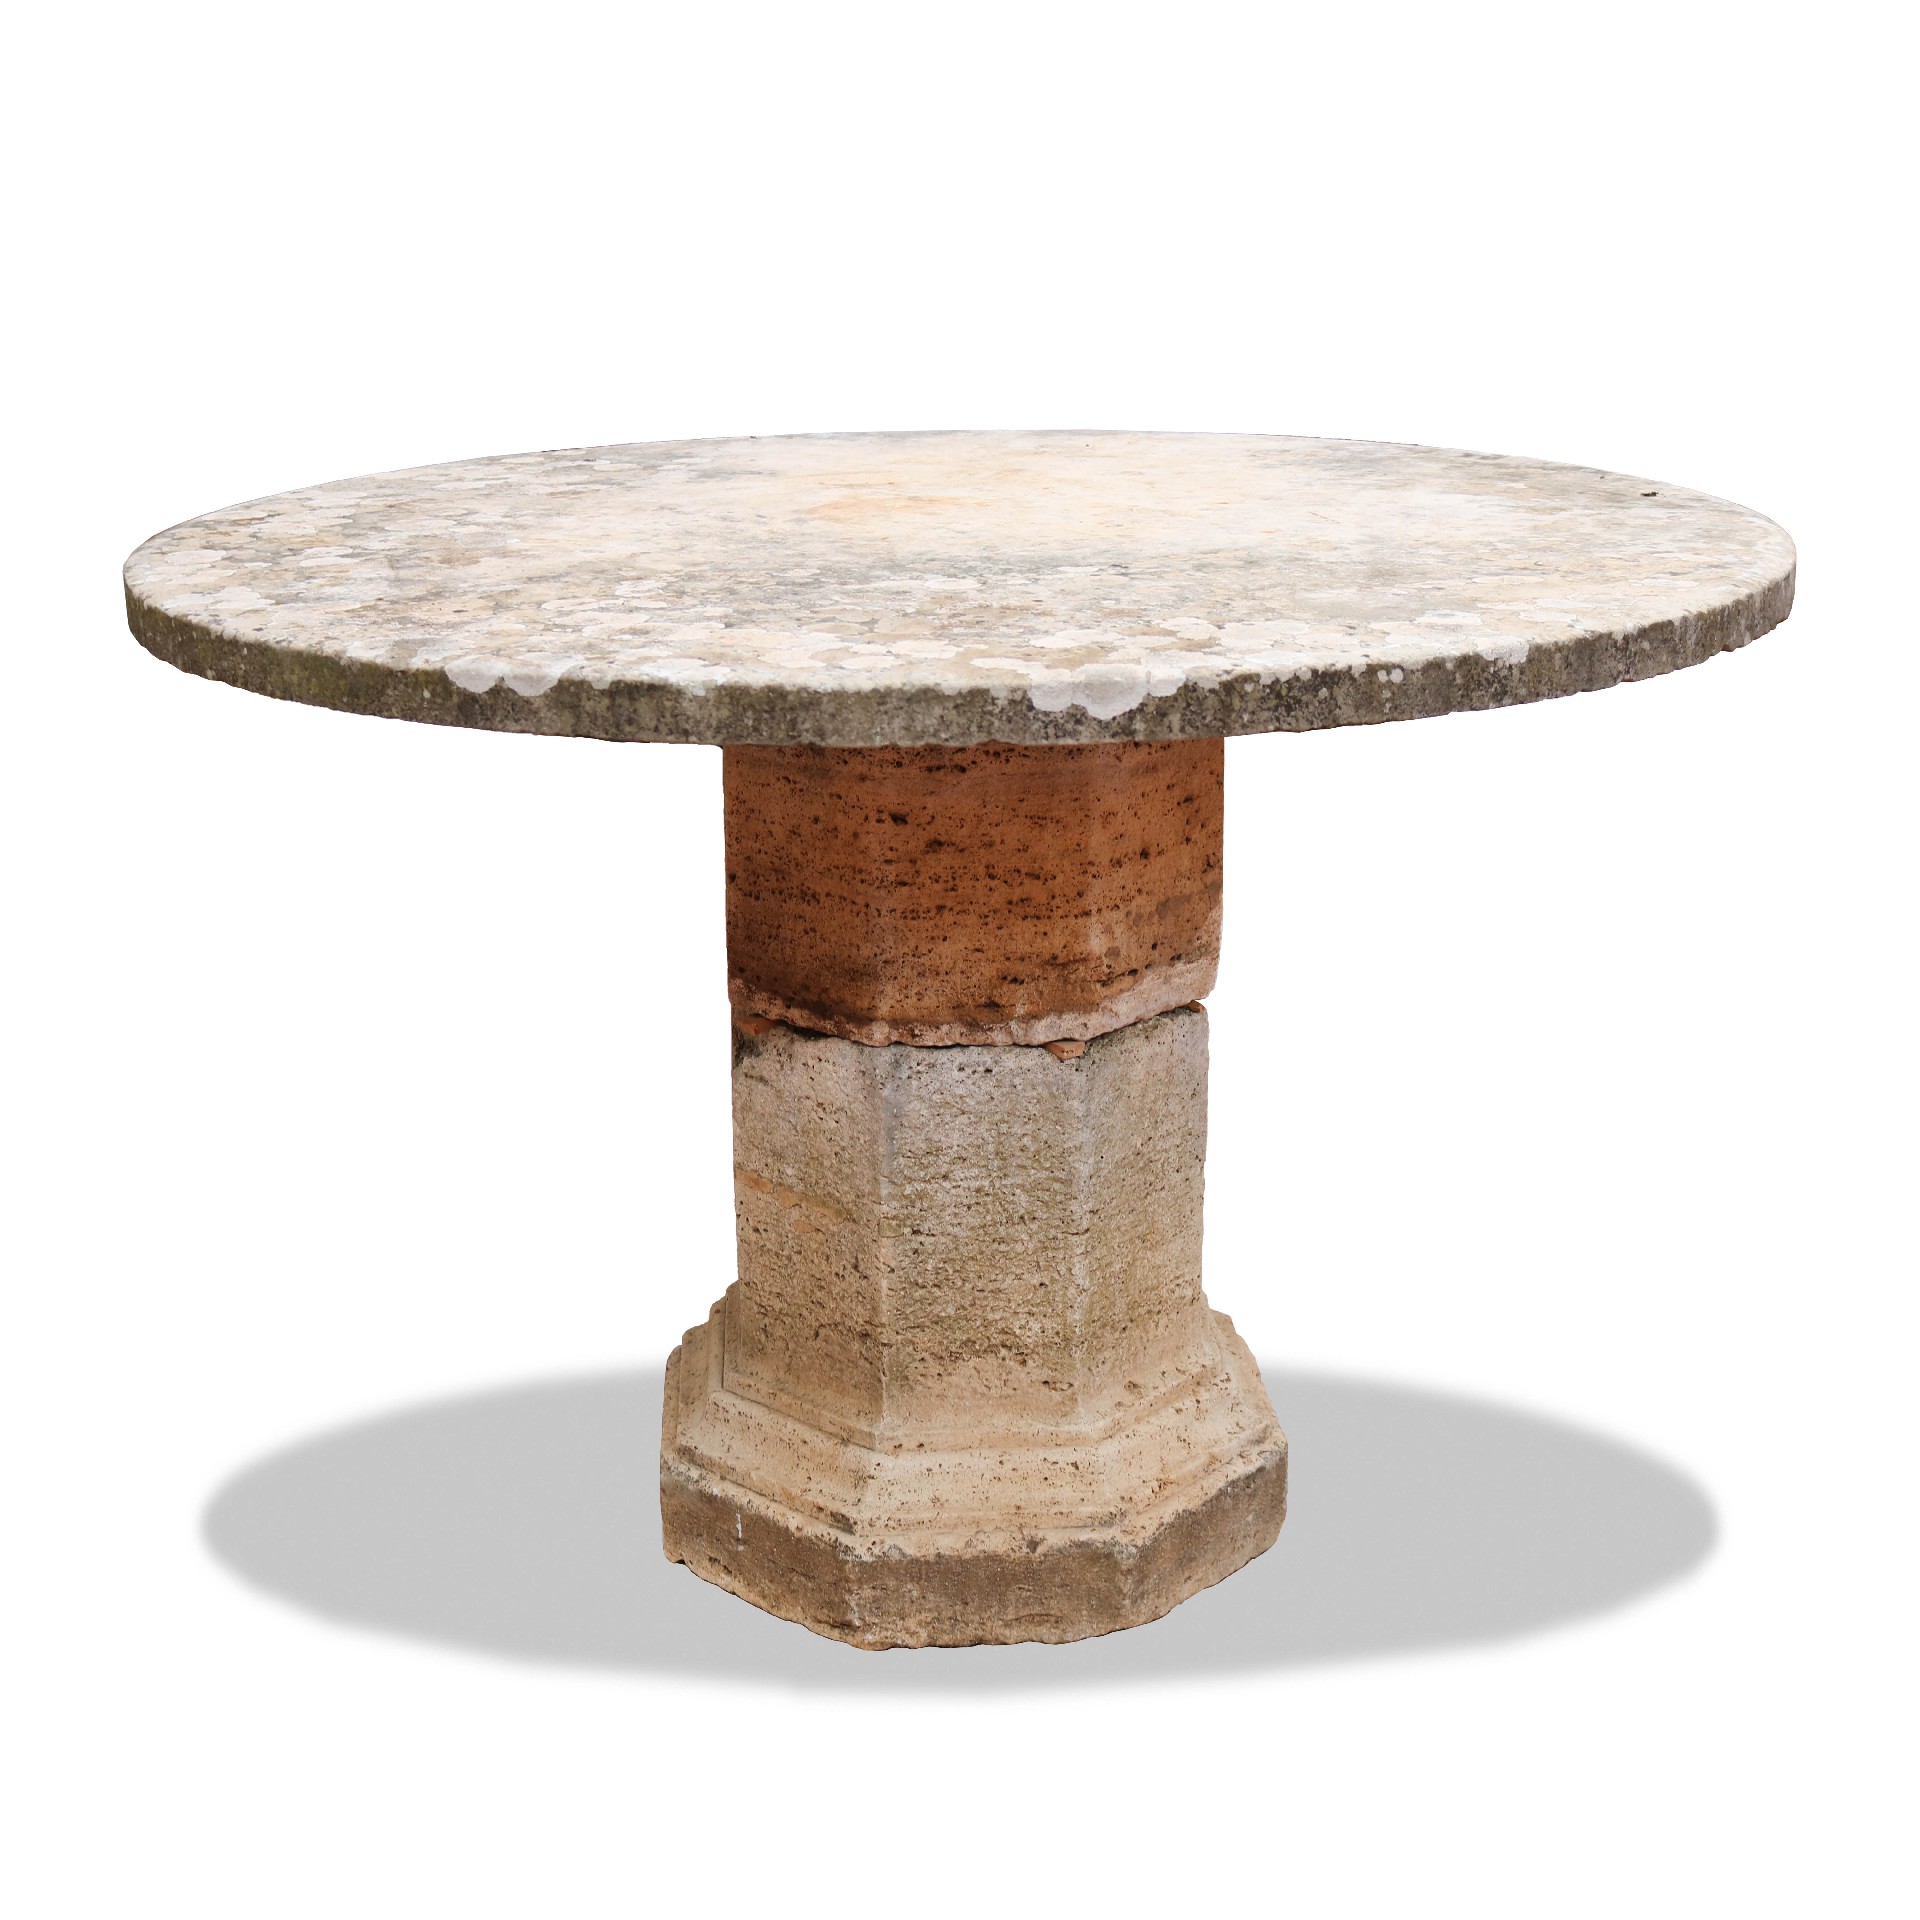 Tavolo antico in pietra e marmo. - Tavoli in vari materiali - Tavoli e complementi - Prodotti - Antichità Fiorillo